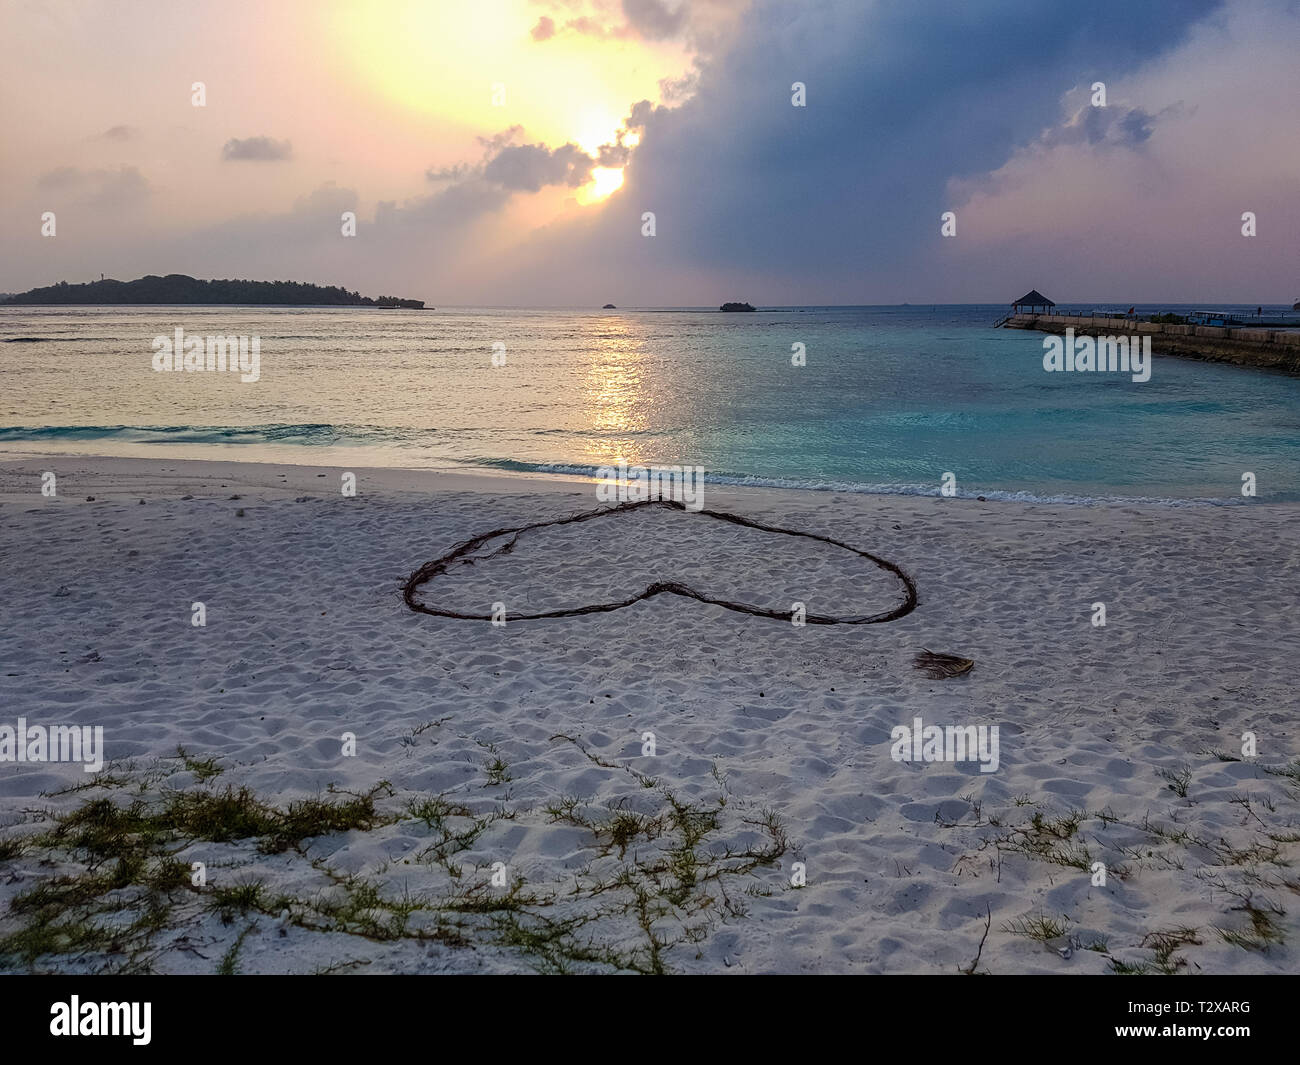 Romantische Herz auf Sand an einem tropischen Strand. Klare türkisfarbene Meer. Malediven Inseln. Stockfoto